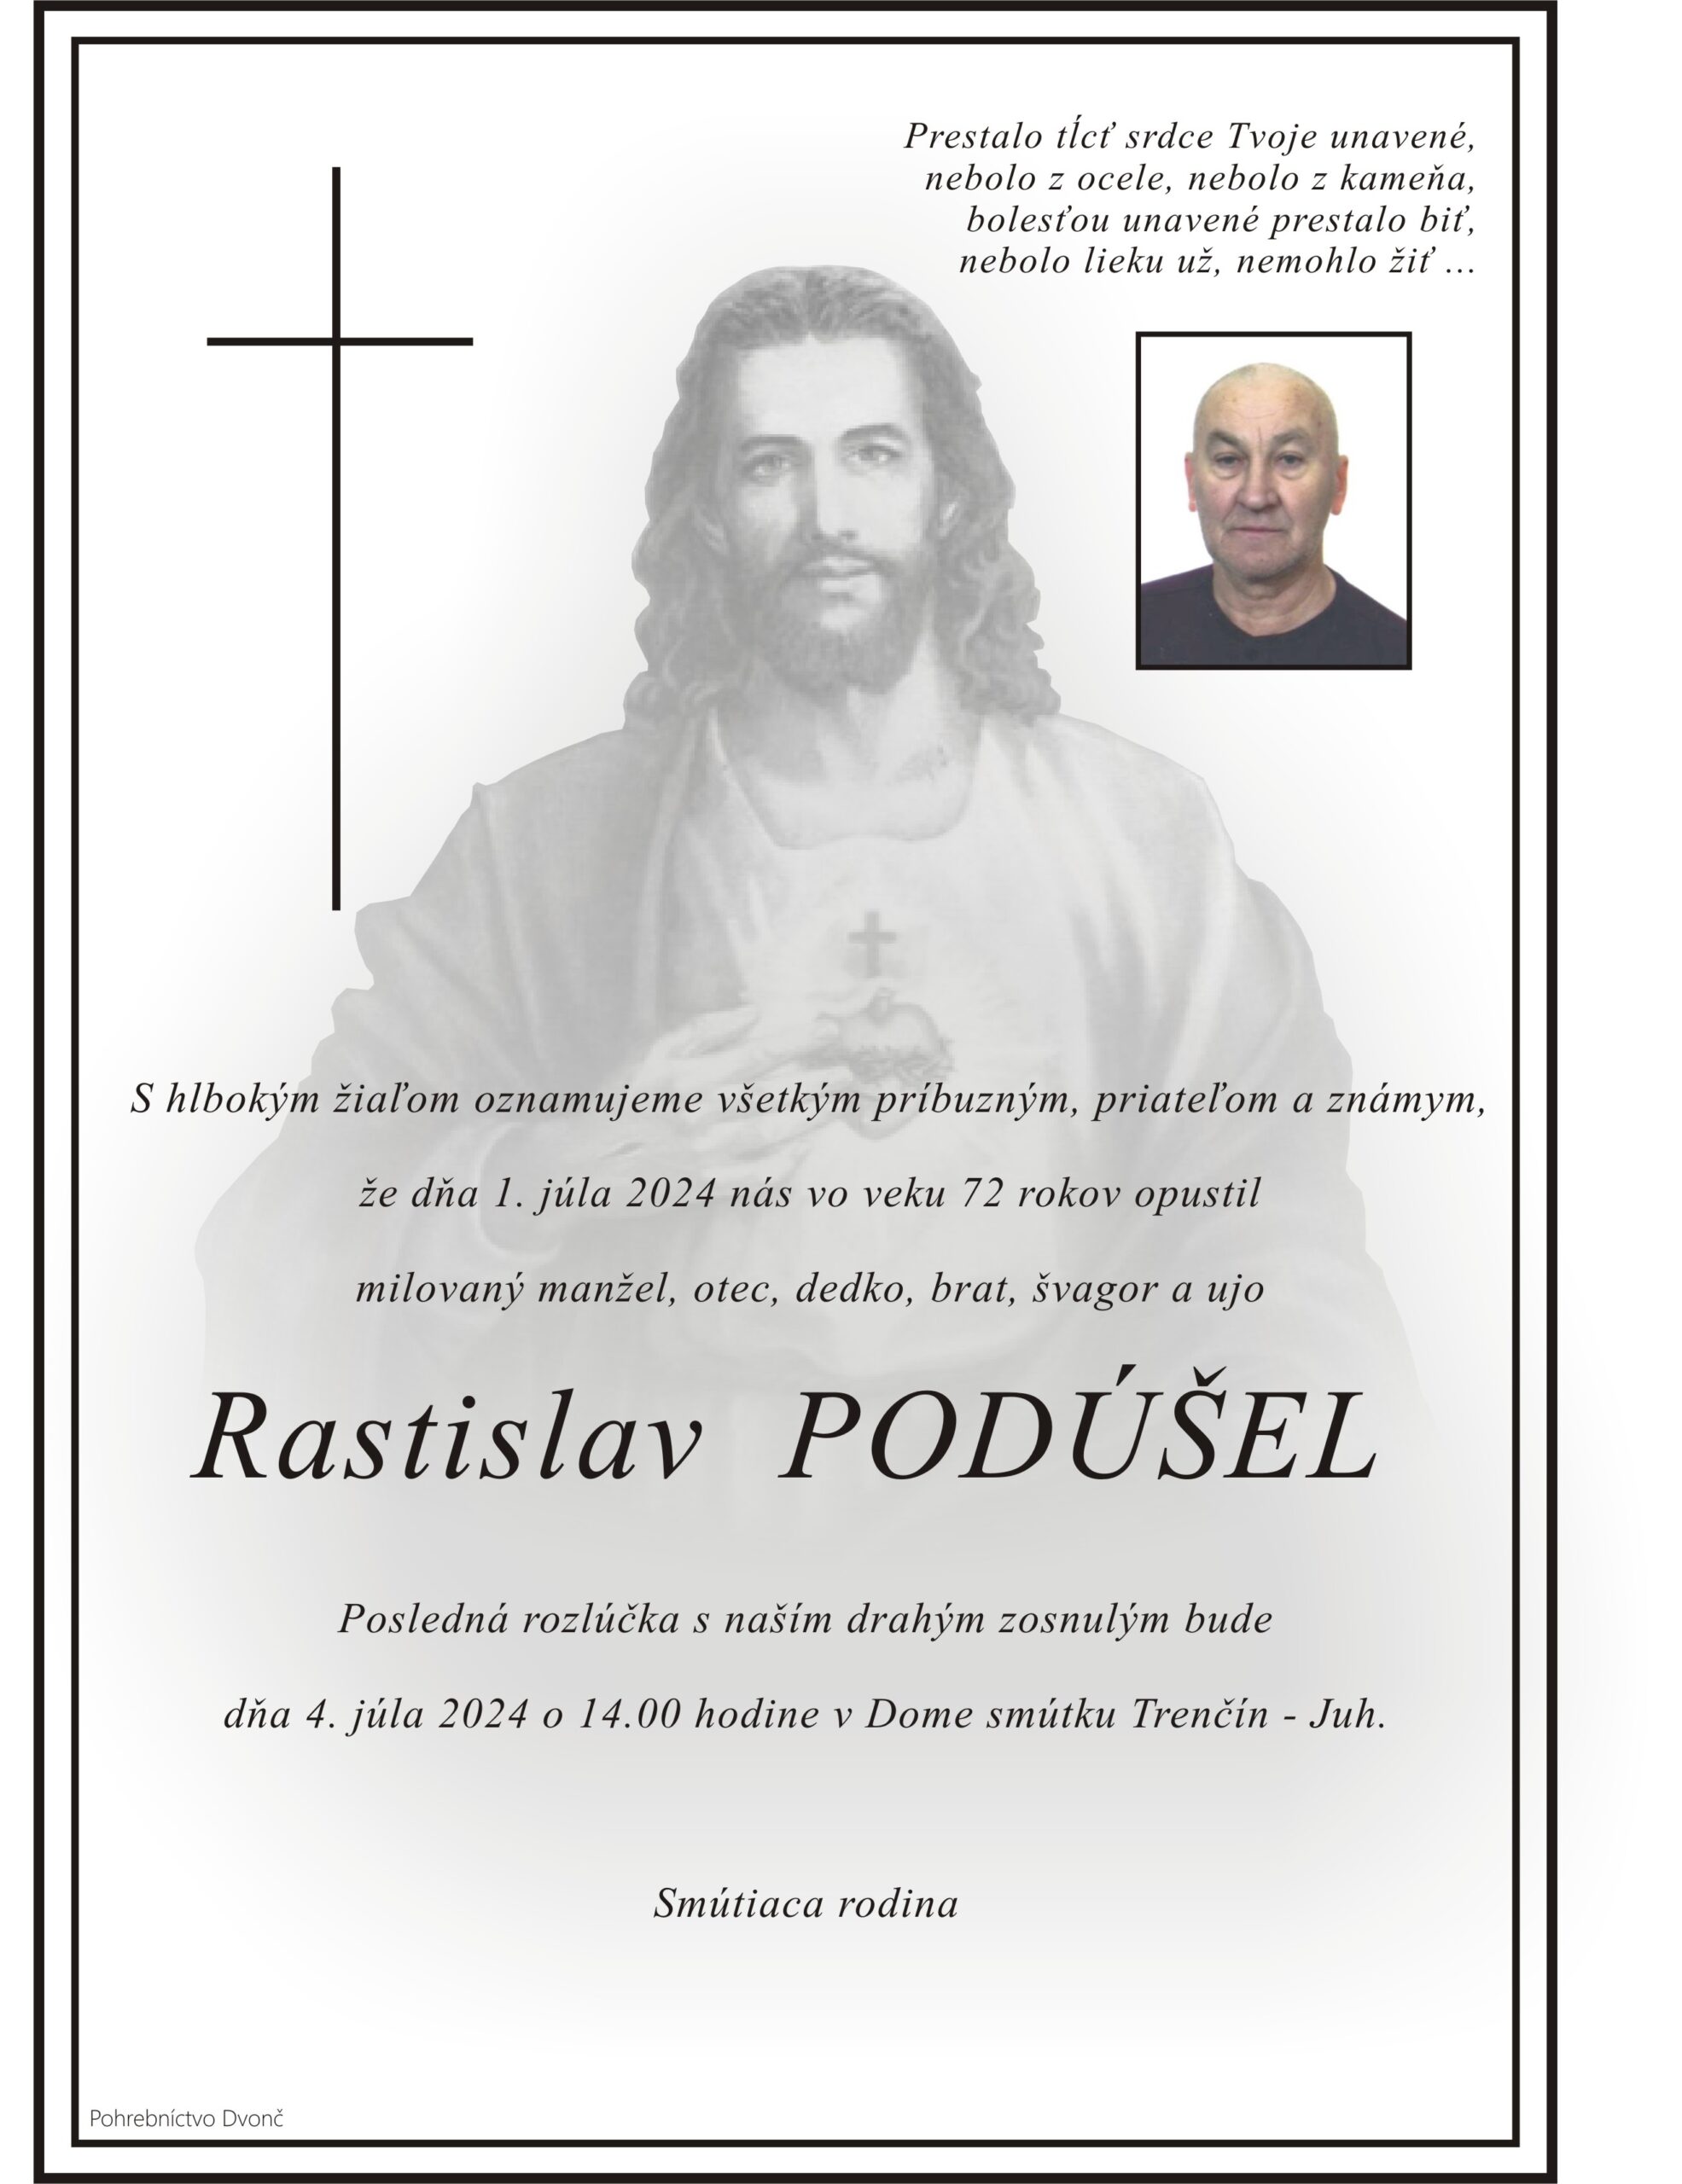 Rastislav Podúšel